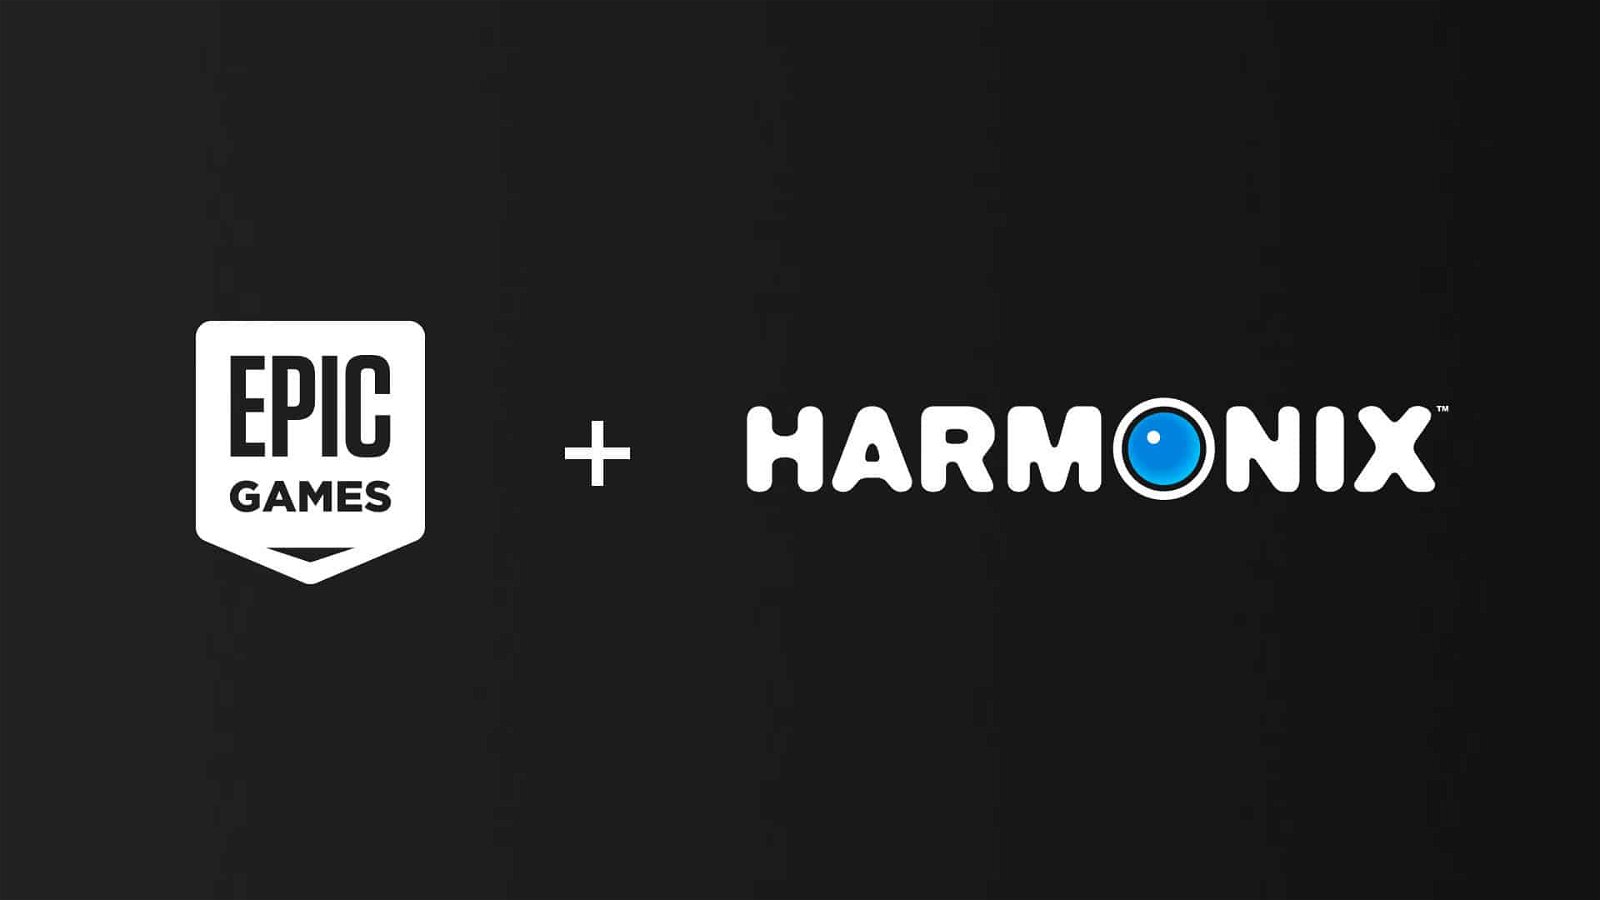 Epic Games acquires Harmonix